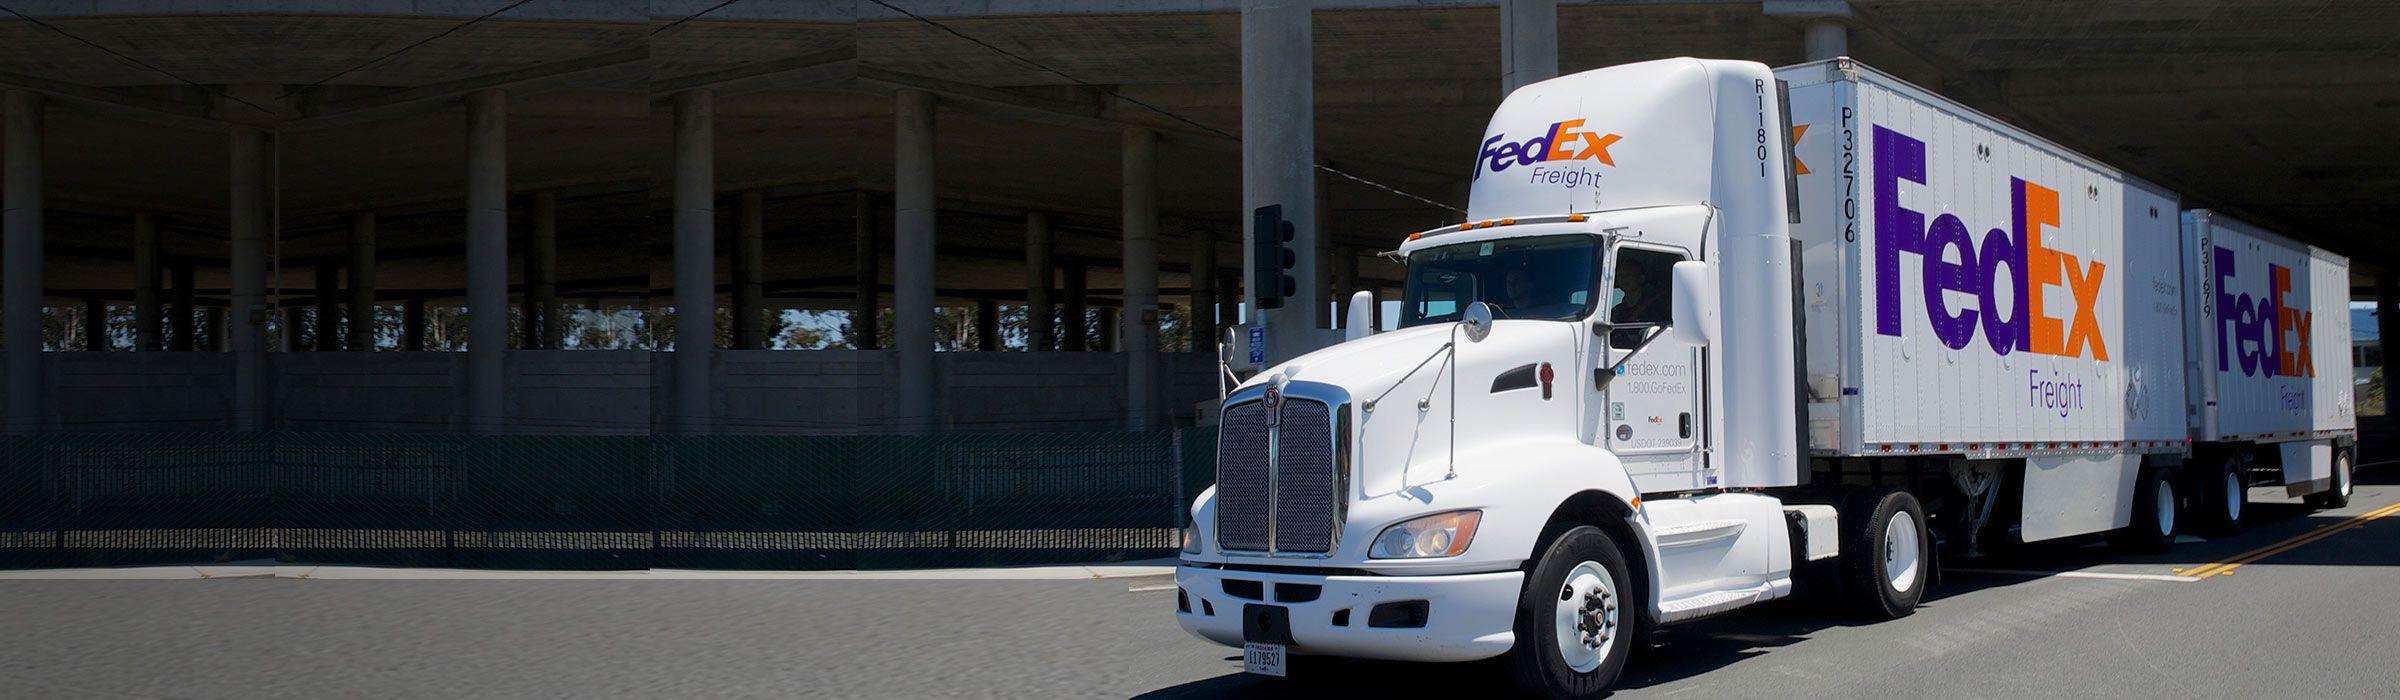 FedEx Freight Truck Logo - FedEx Freight (LTL) Shipping Forms